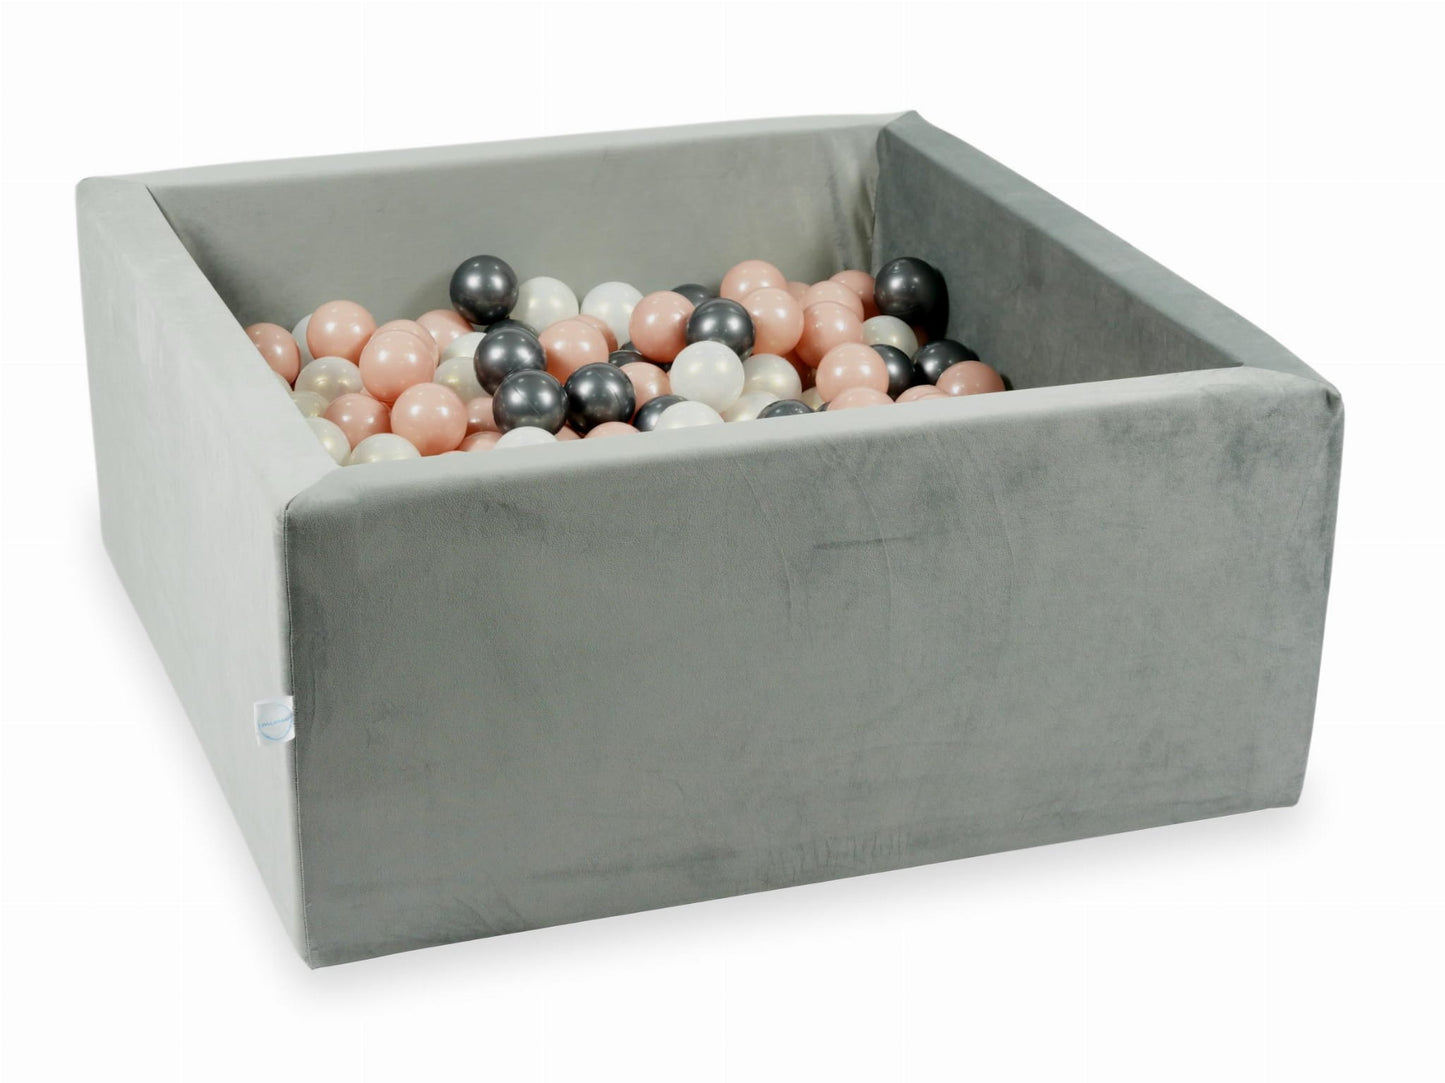 Piscine à Balles 90x90x40 Velvet gris avec balles 400 pcs (rose or, graphite métallique, iridescent)